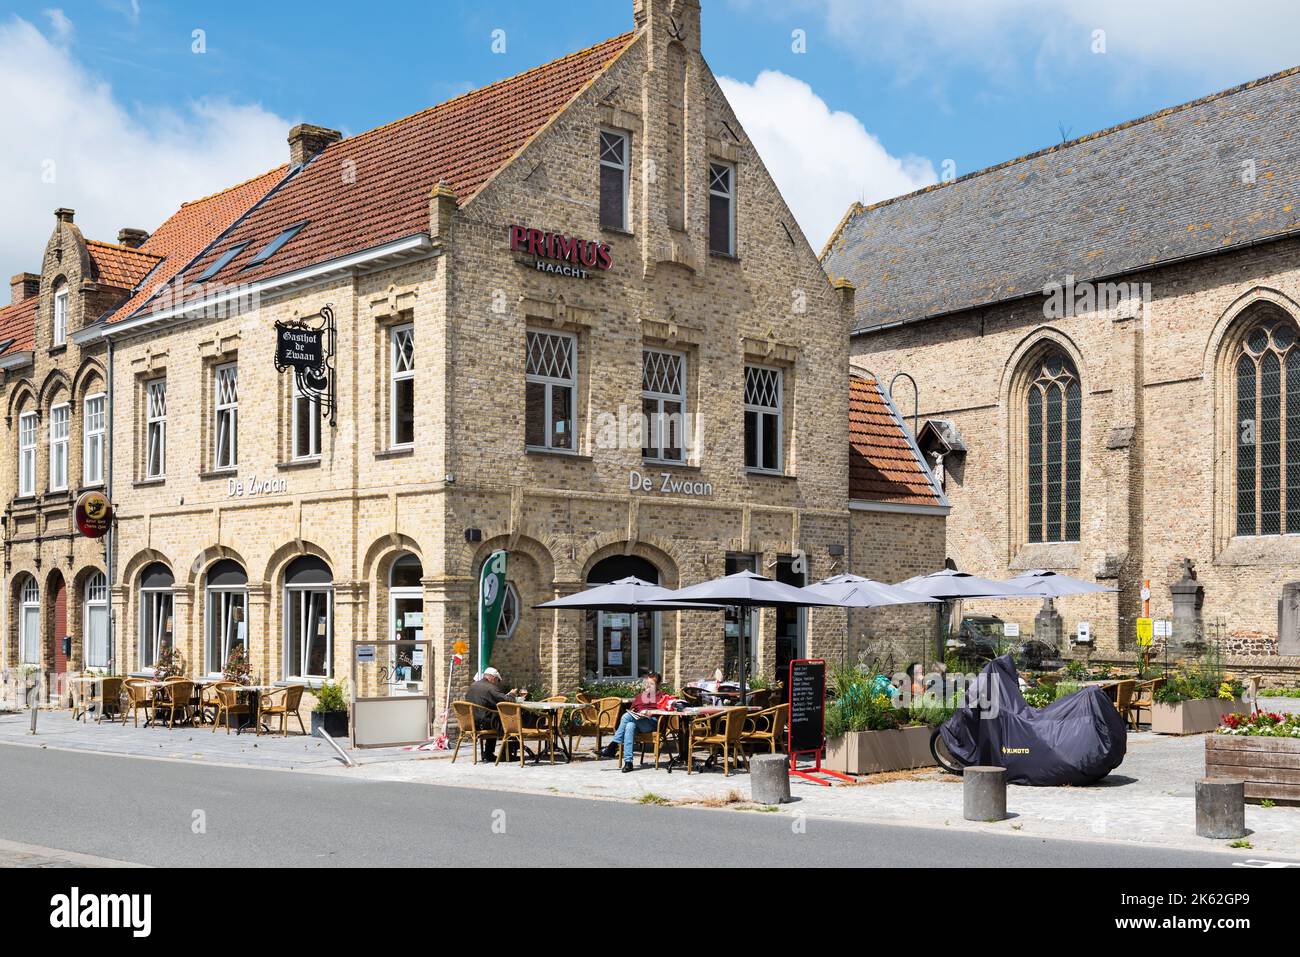 LO-rening, région Flandre Occidentale - Belgique - 07 17 2021 terrasses ensoleillées sur la place principale du marché dans la vieille ville Banque D'Images